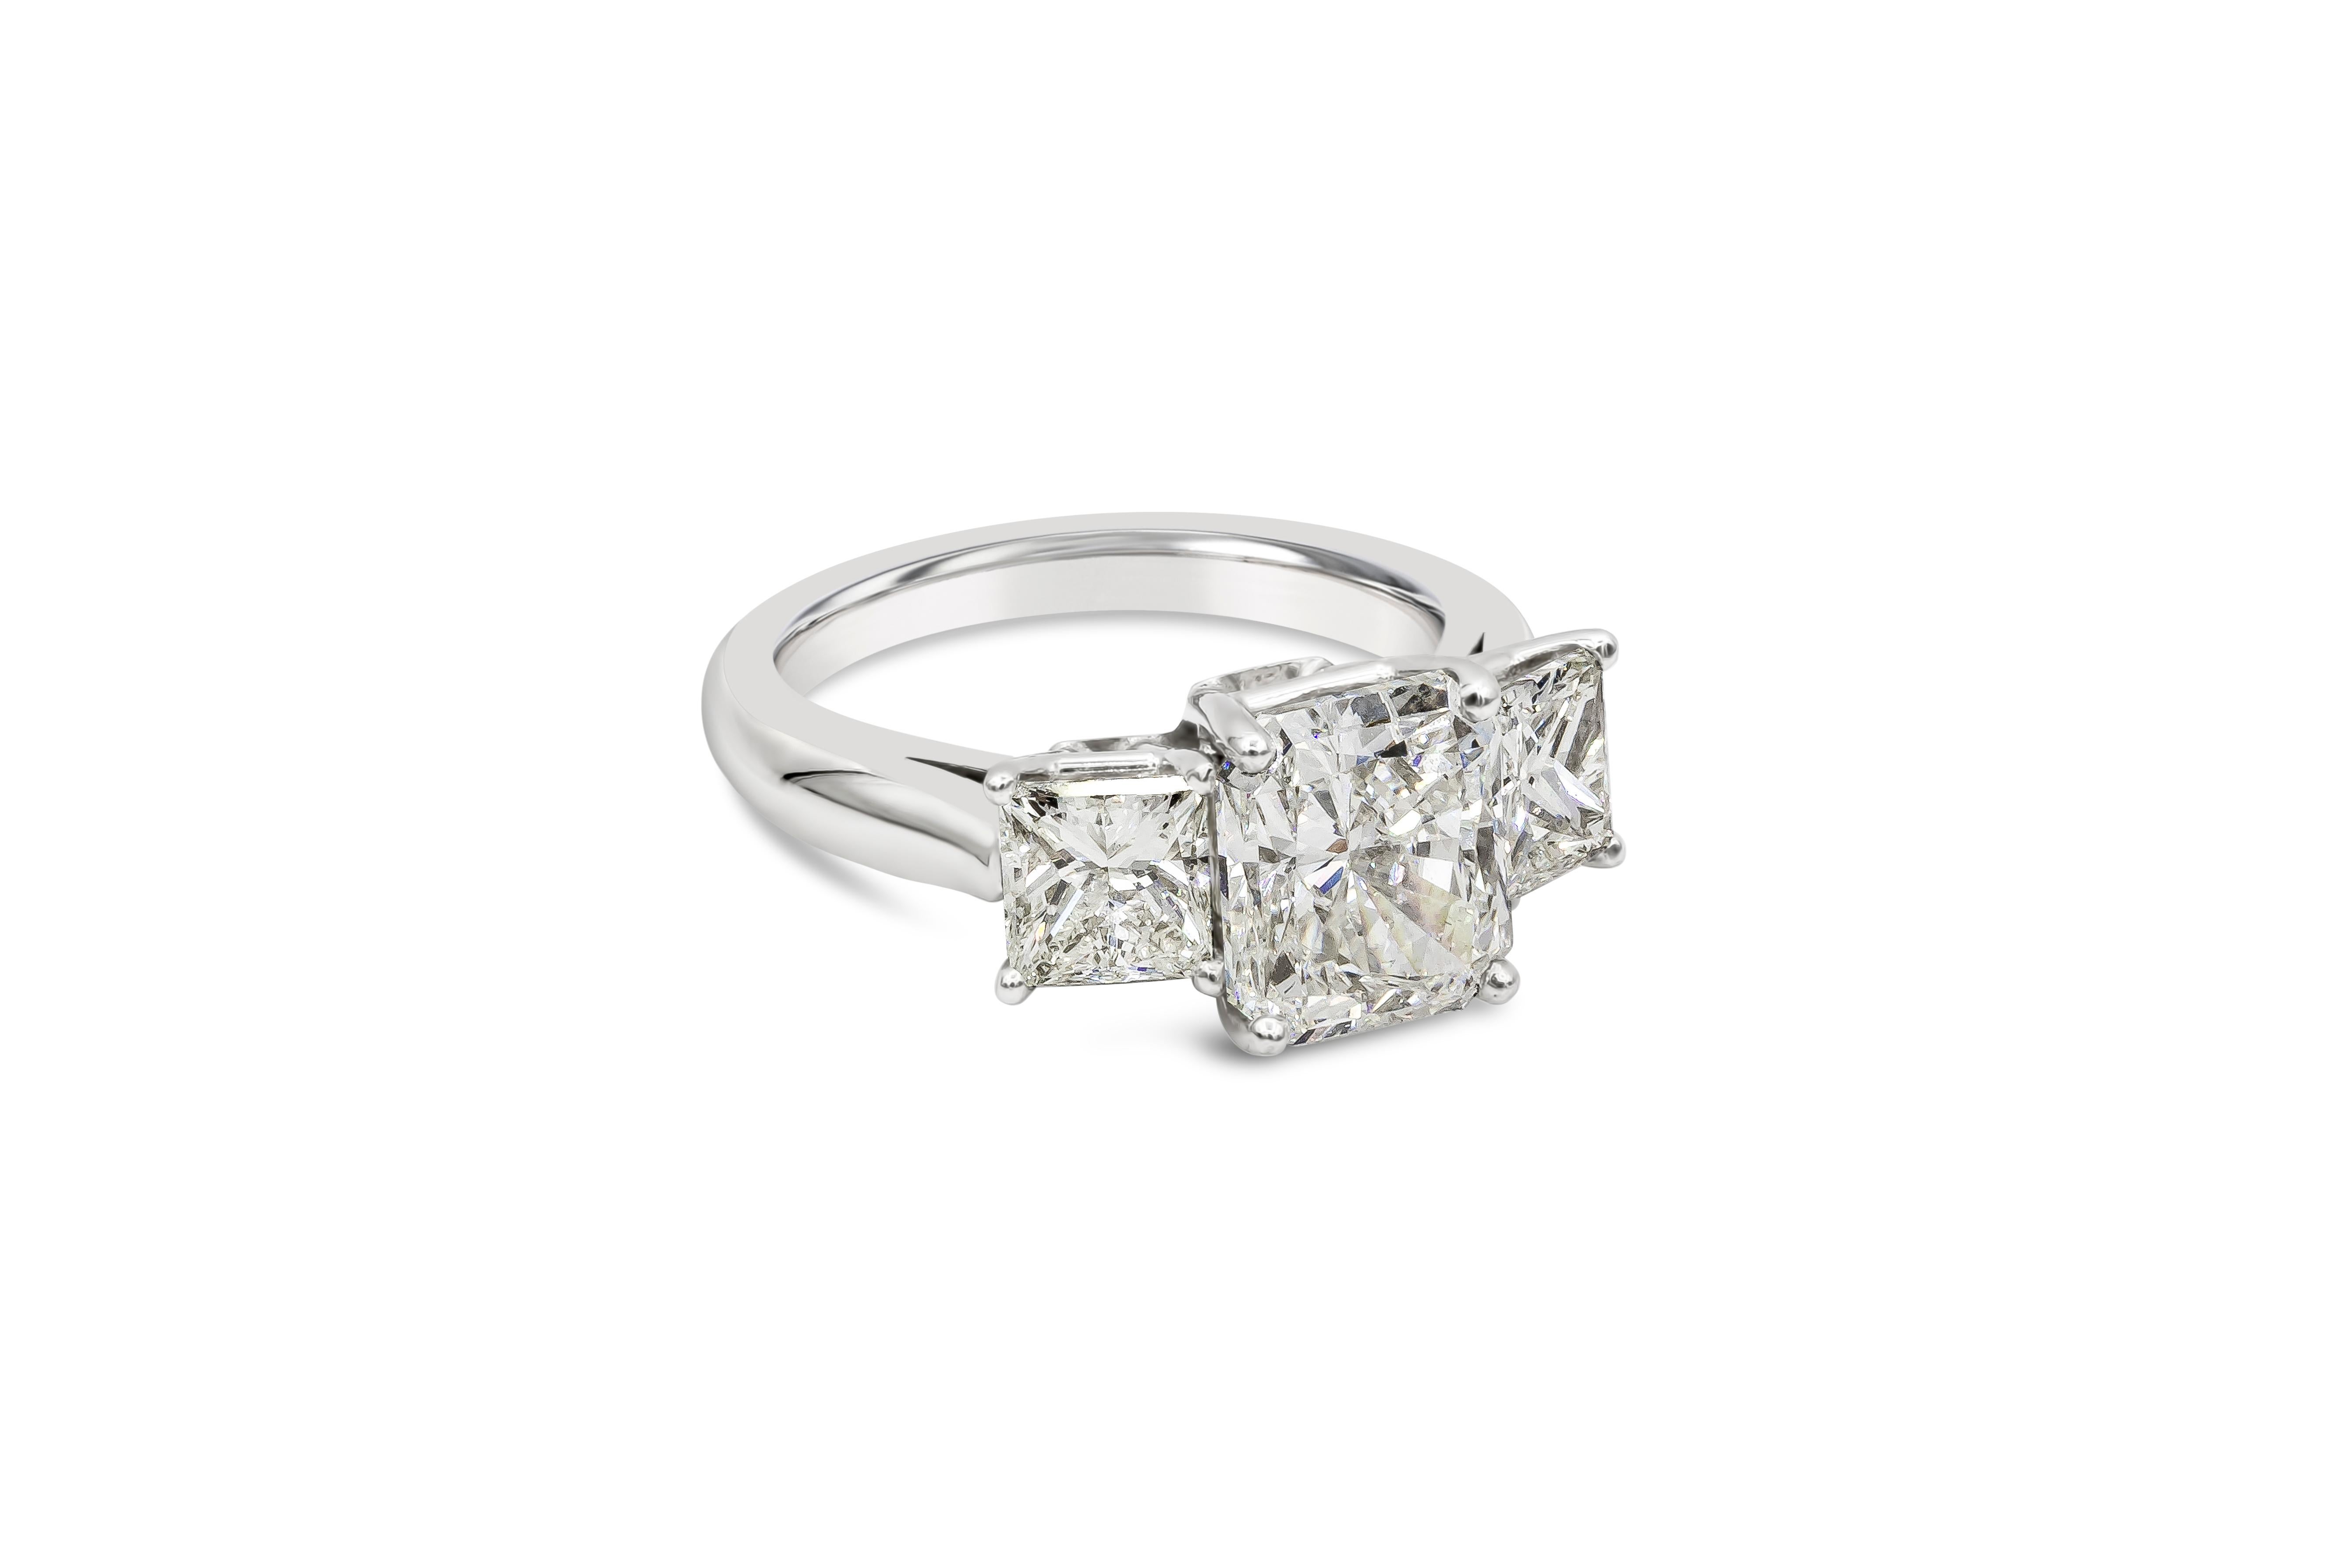 Ein klassischer und brillanter Verlobungsring mit einem Diamanten von 3,03 Karat im Brillantschliff, der vom GIA als Farbe I und Reinheit VS1 zertifiziert wurde. Das Zentrum wird von Diamanten im Prinzessinnenschliff mit einem Gesamtgewicht von 1,60